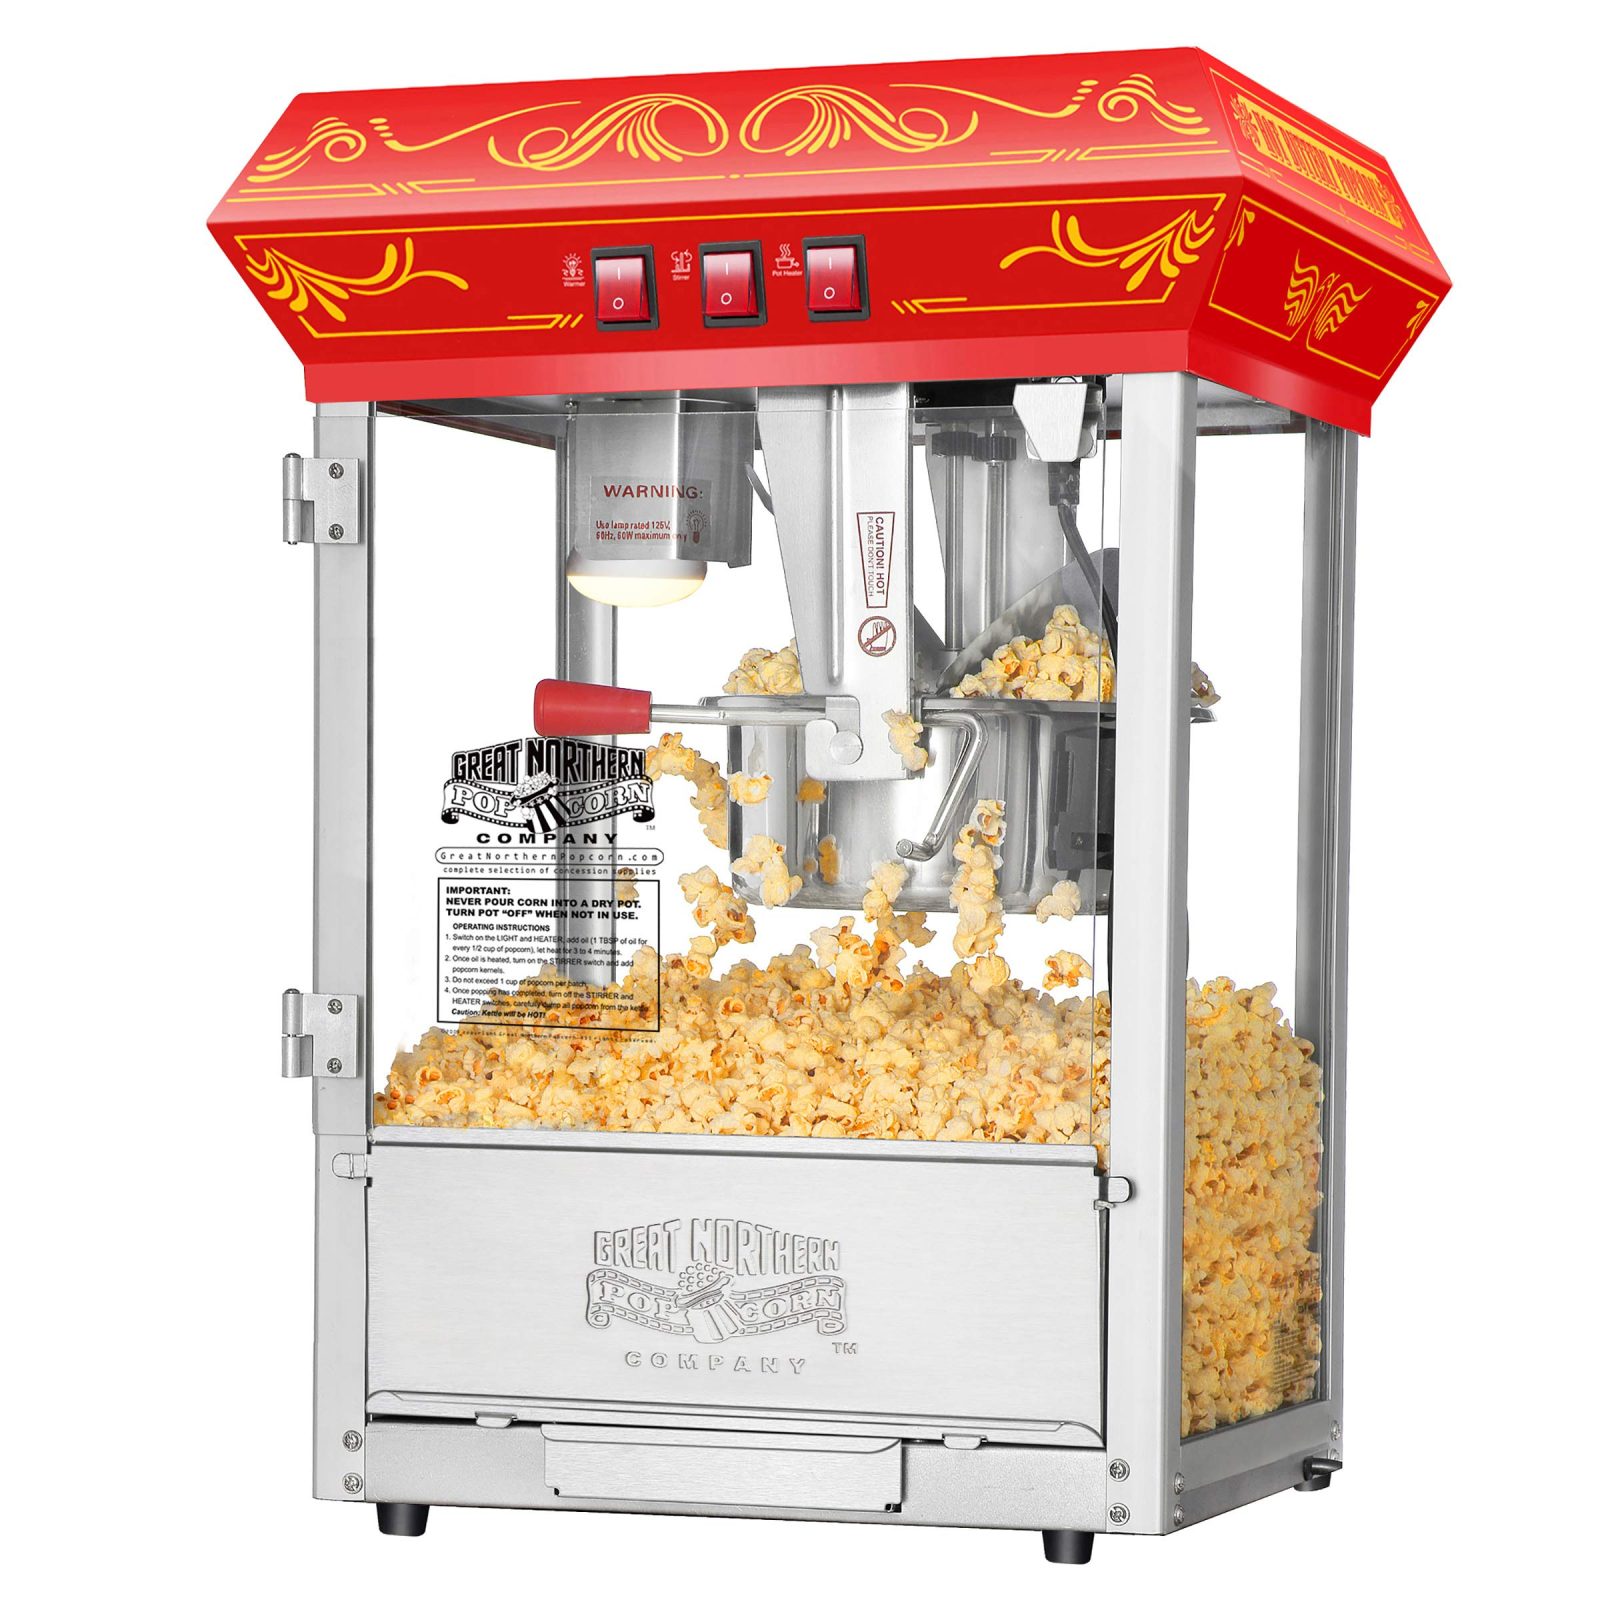 Popcorn Machine - Hire in Montgomery IL, Oswego IL, Aurora IL, Yorkville  IL, Plano IL, Naperville IL